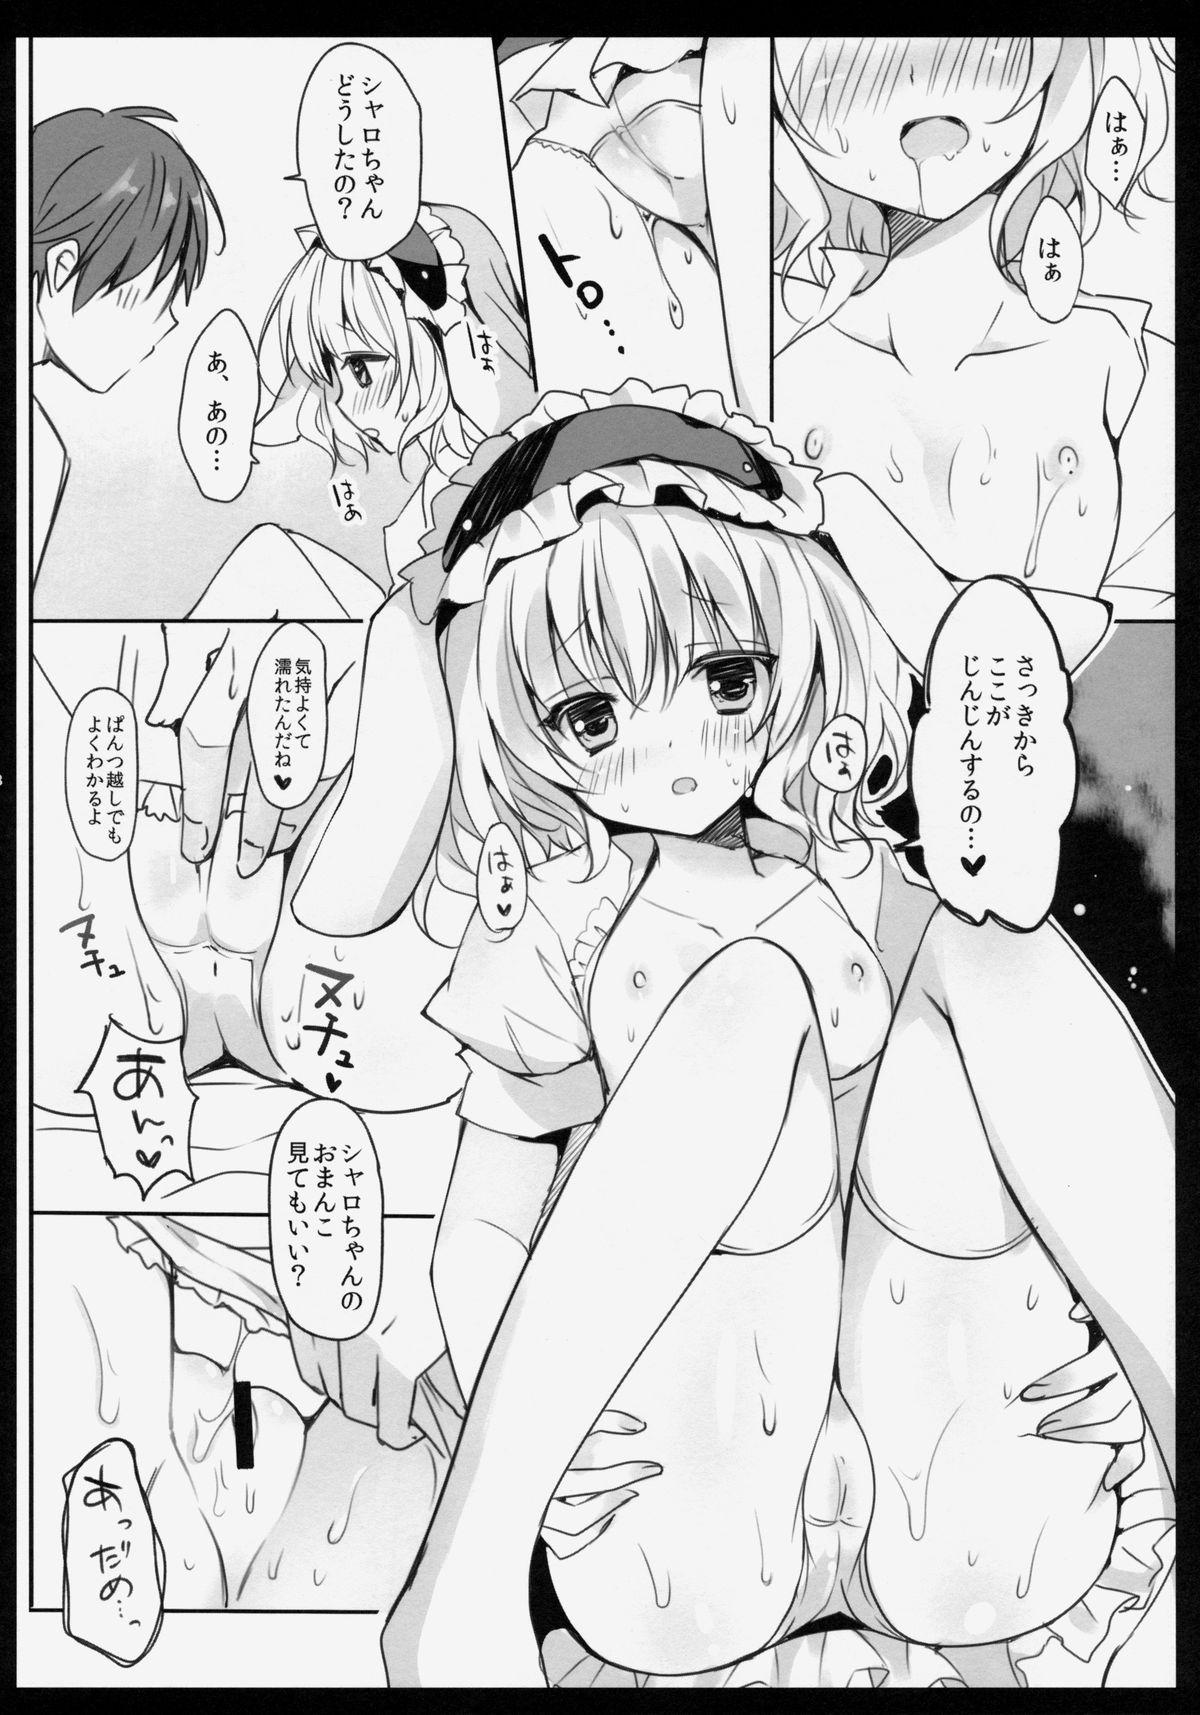 Sextape Gochuumon wa Sharo-chan desu ka? - Gochuumon wa usagi desu ka Nude - Page 7